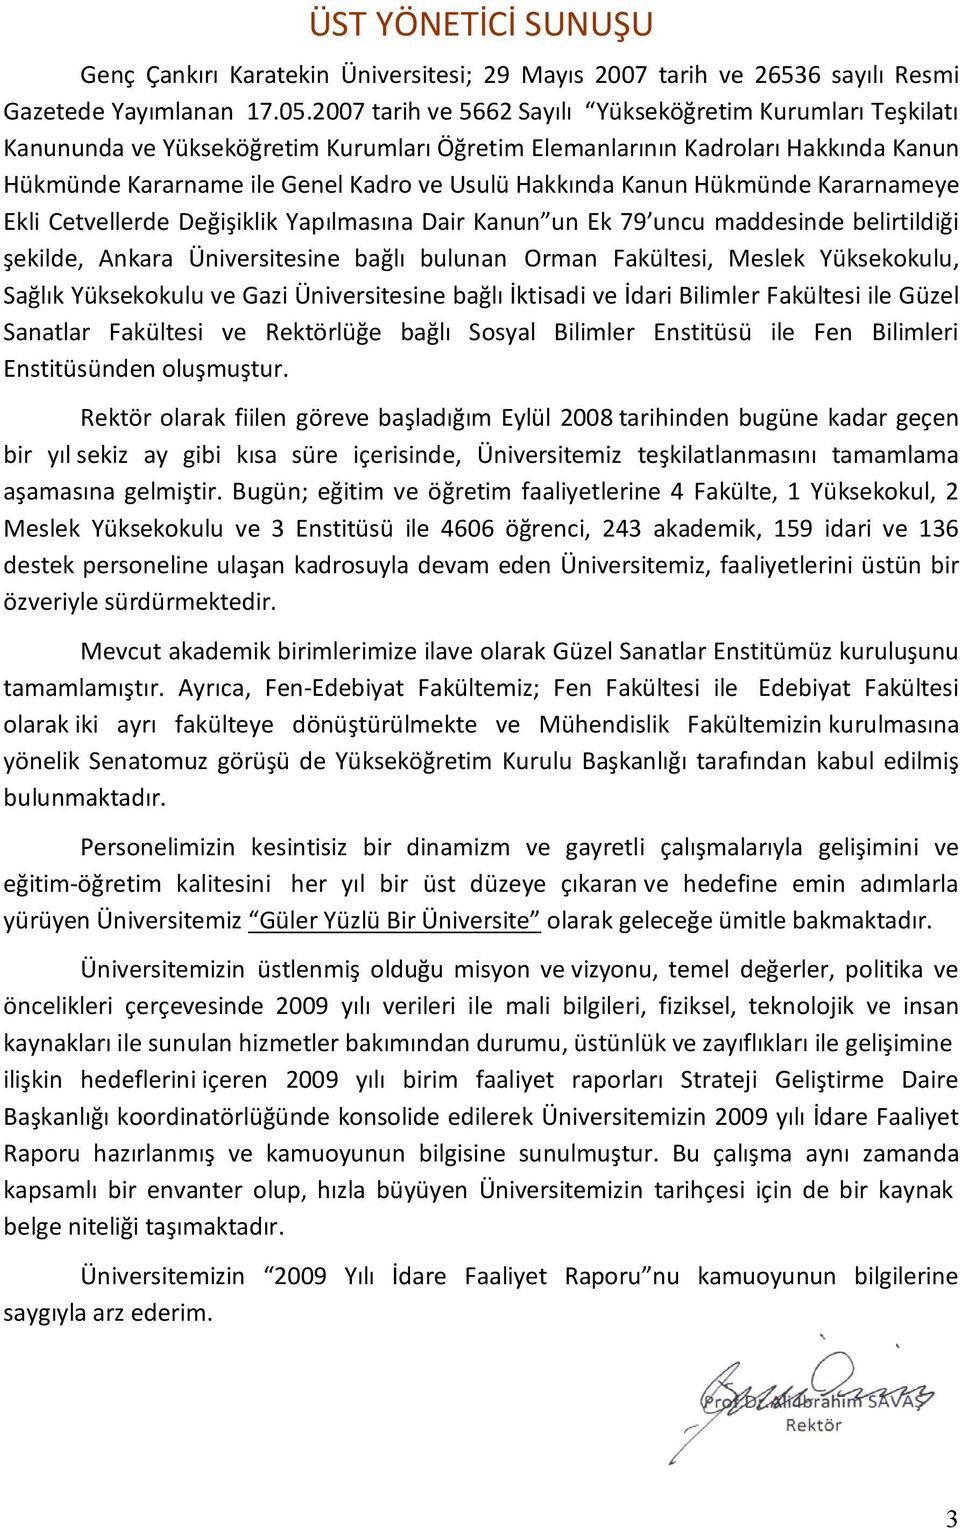 Kanun Hükmünde Kararnameye Ekli Cetvellerde Değişiklik Yapılmasına Dair Kanun un Ek 79 uncu maddesinde belirtildiği şekilde, Ankara Üniversitesine bağlı bulunan Orman Fakültesi, Meslek Yüksekokulu,